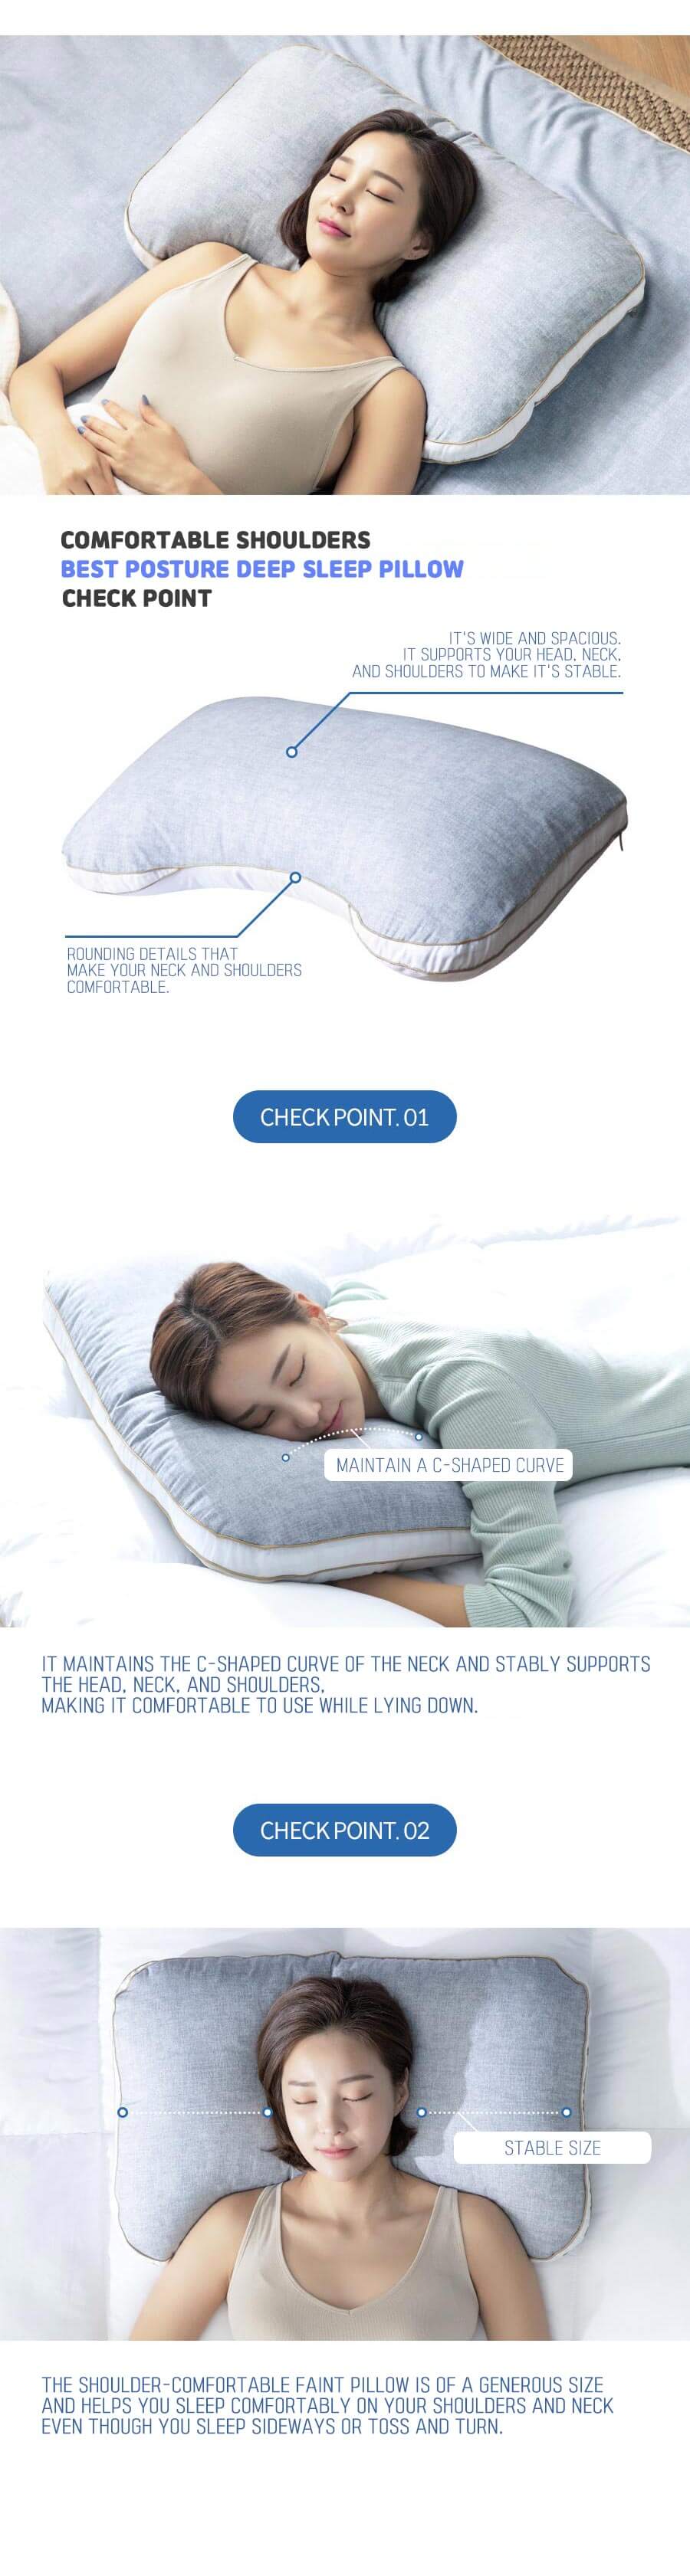 Best posture deep sleep Pillow-2